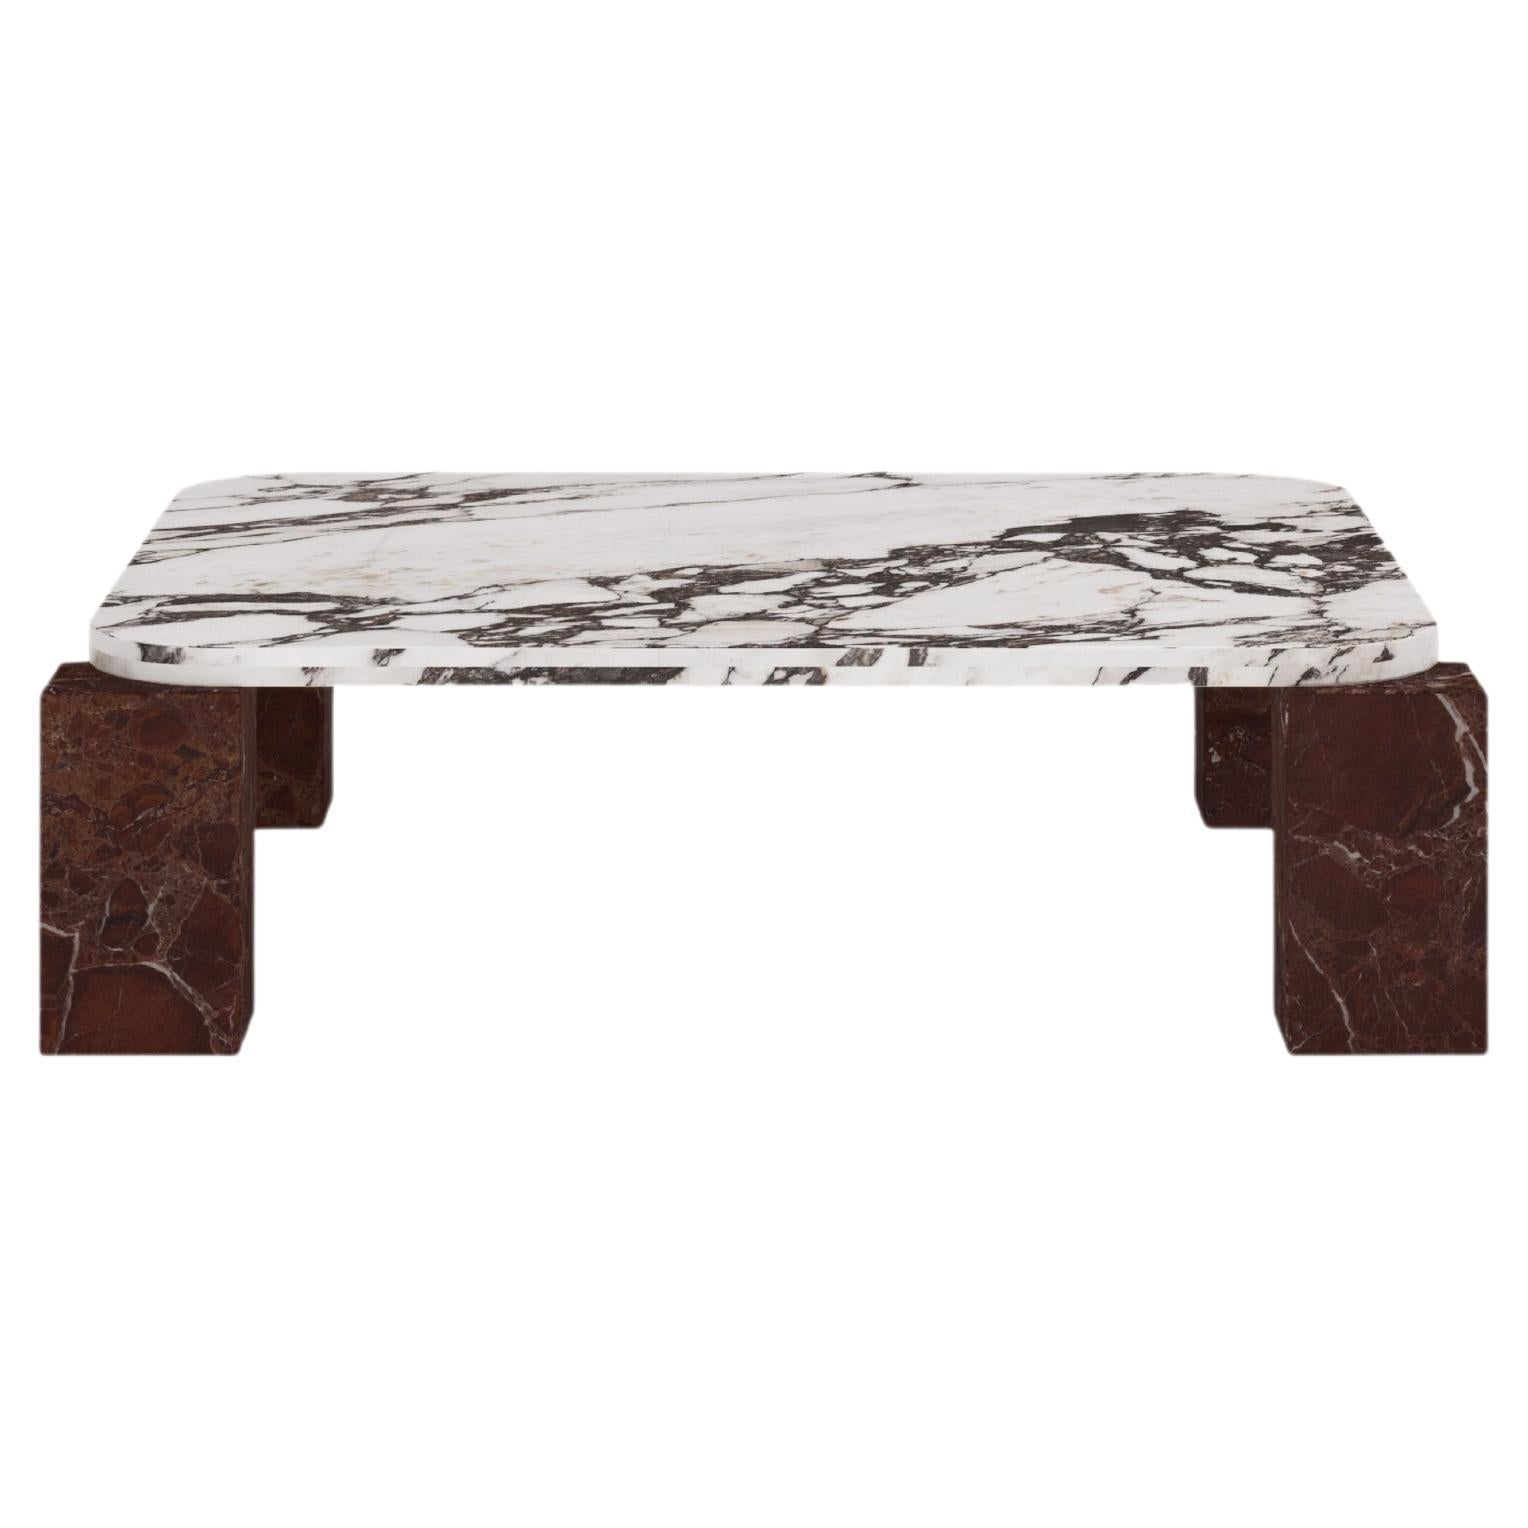 FORM(LA) Cubo Square Coffee Table 62”L x 62"W x 14”H Viola & Rosso Marble